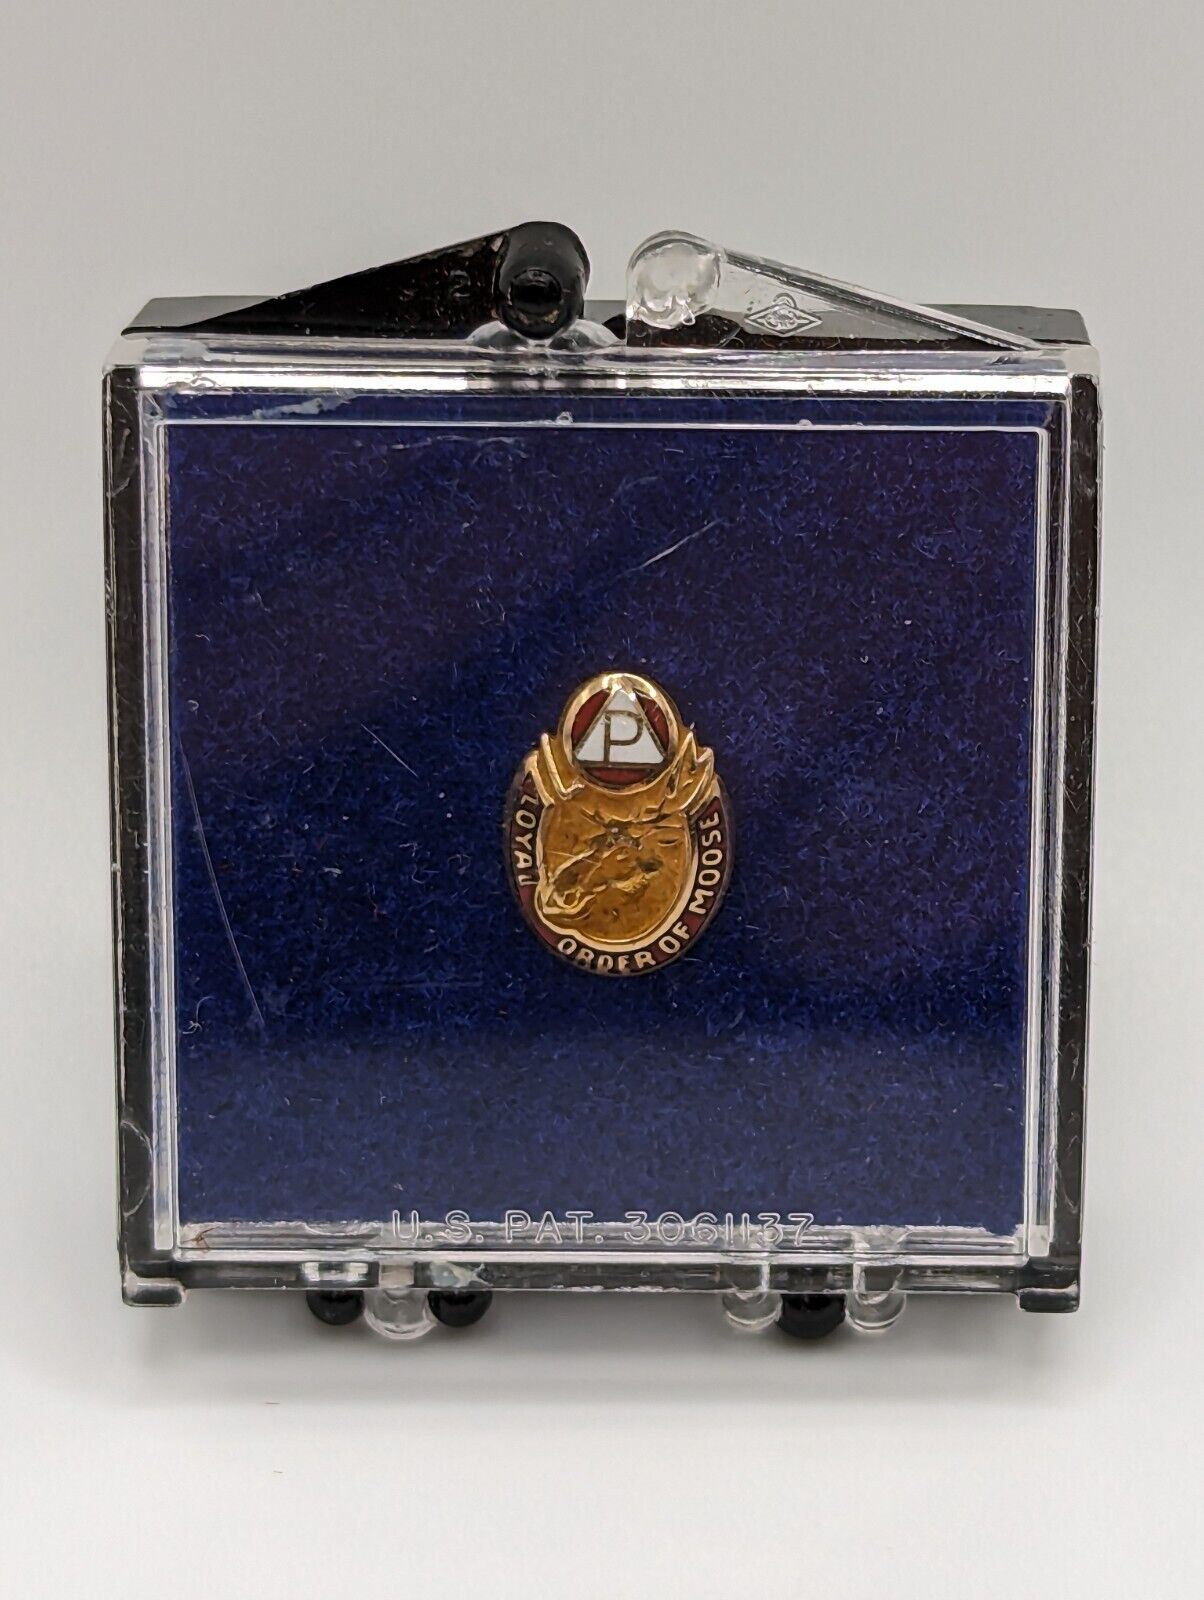 Vintage 10K LOYAL ORDER OF MOOSE Screwback Pin in Case